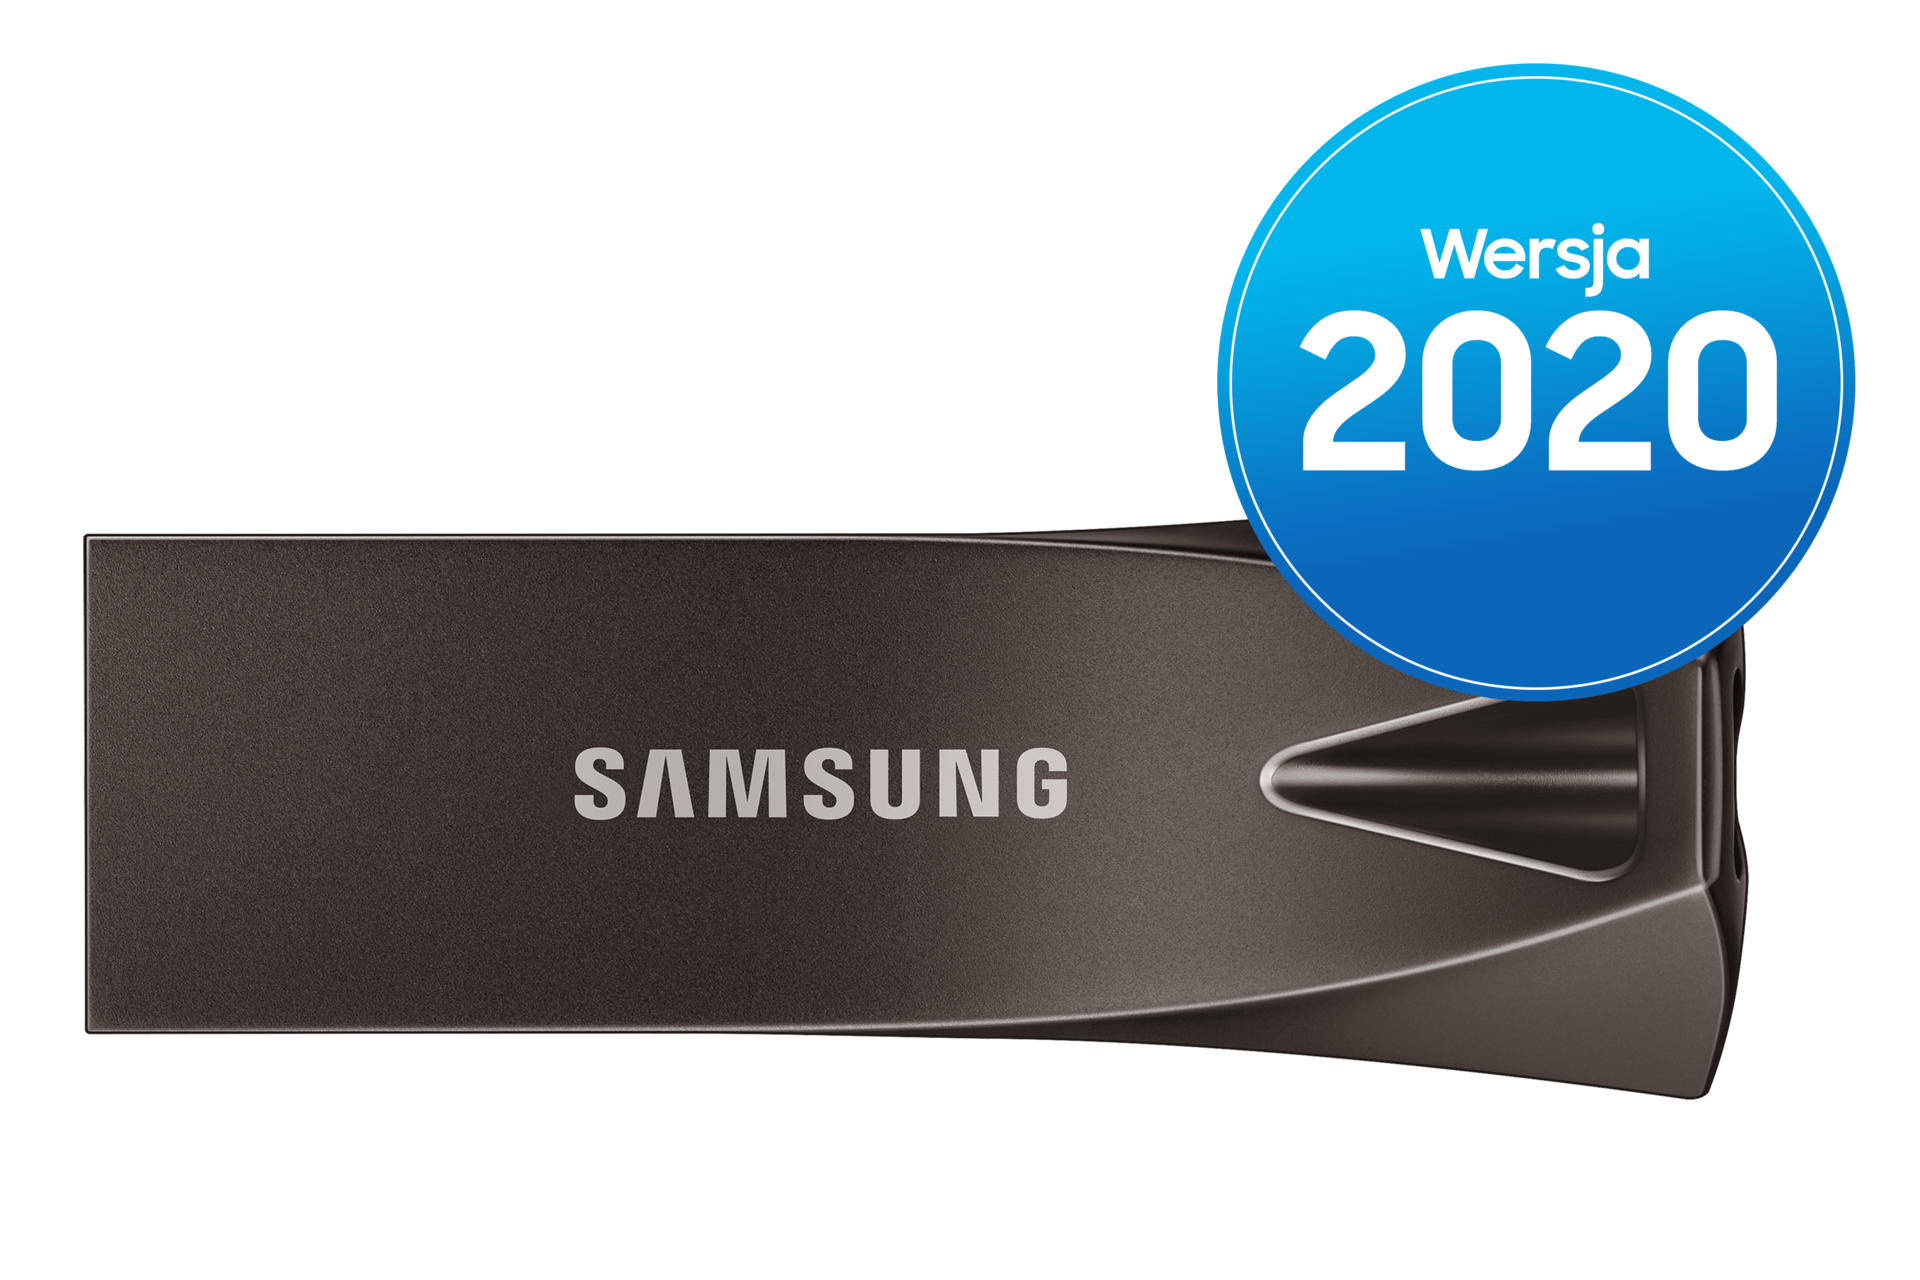 Samsung 64GB USB 3.1 Bar Plus Flash Drive 200 MB/s - Camera Gear